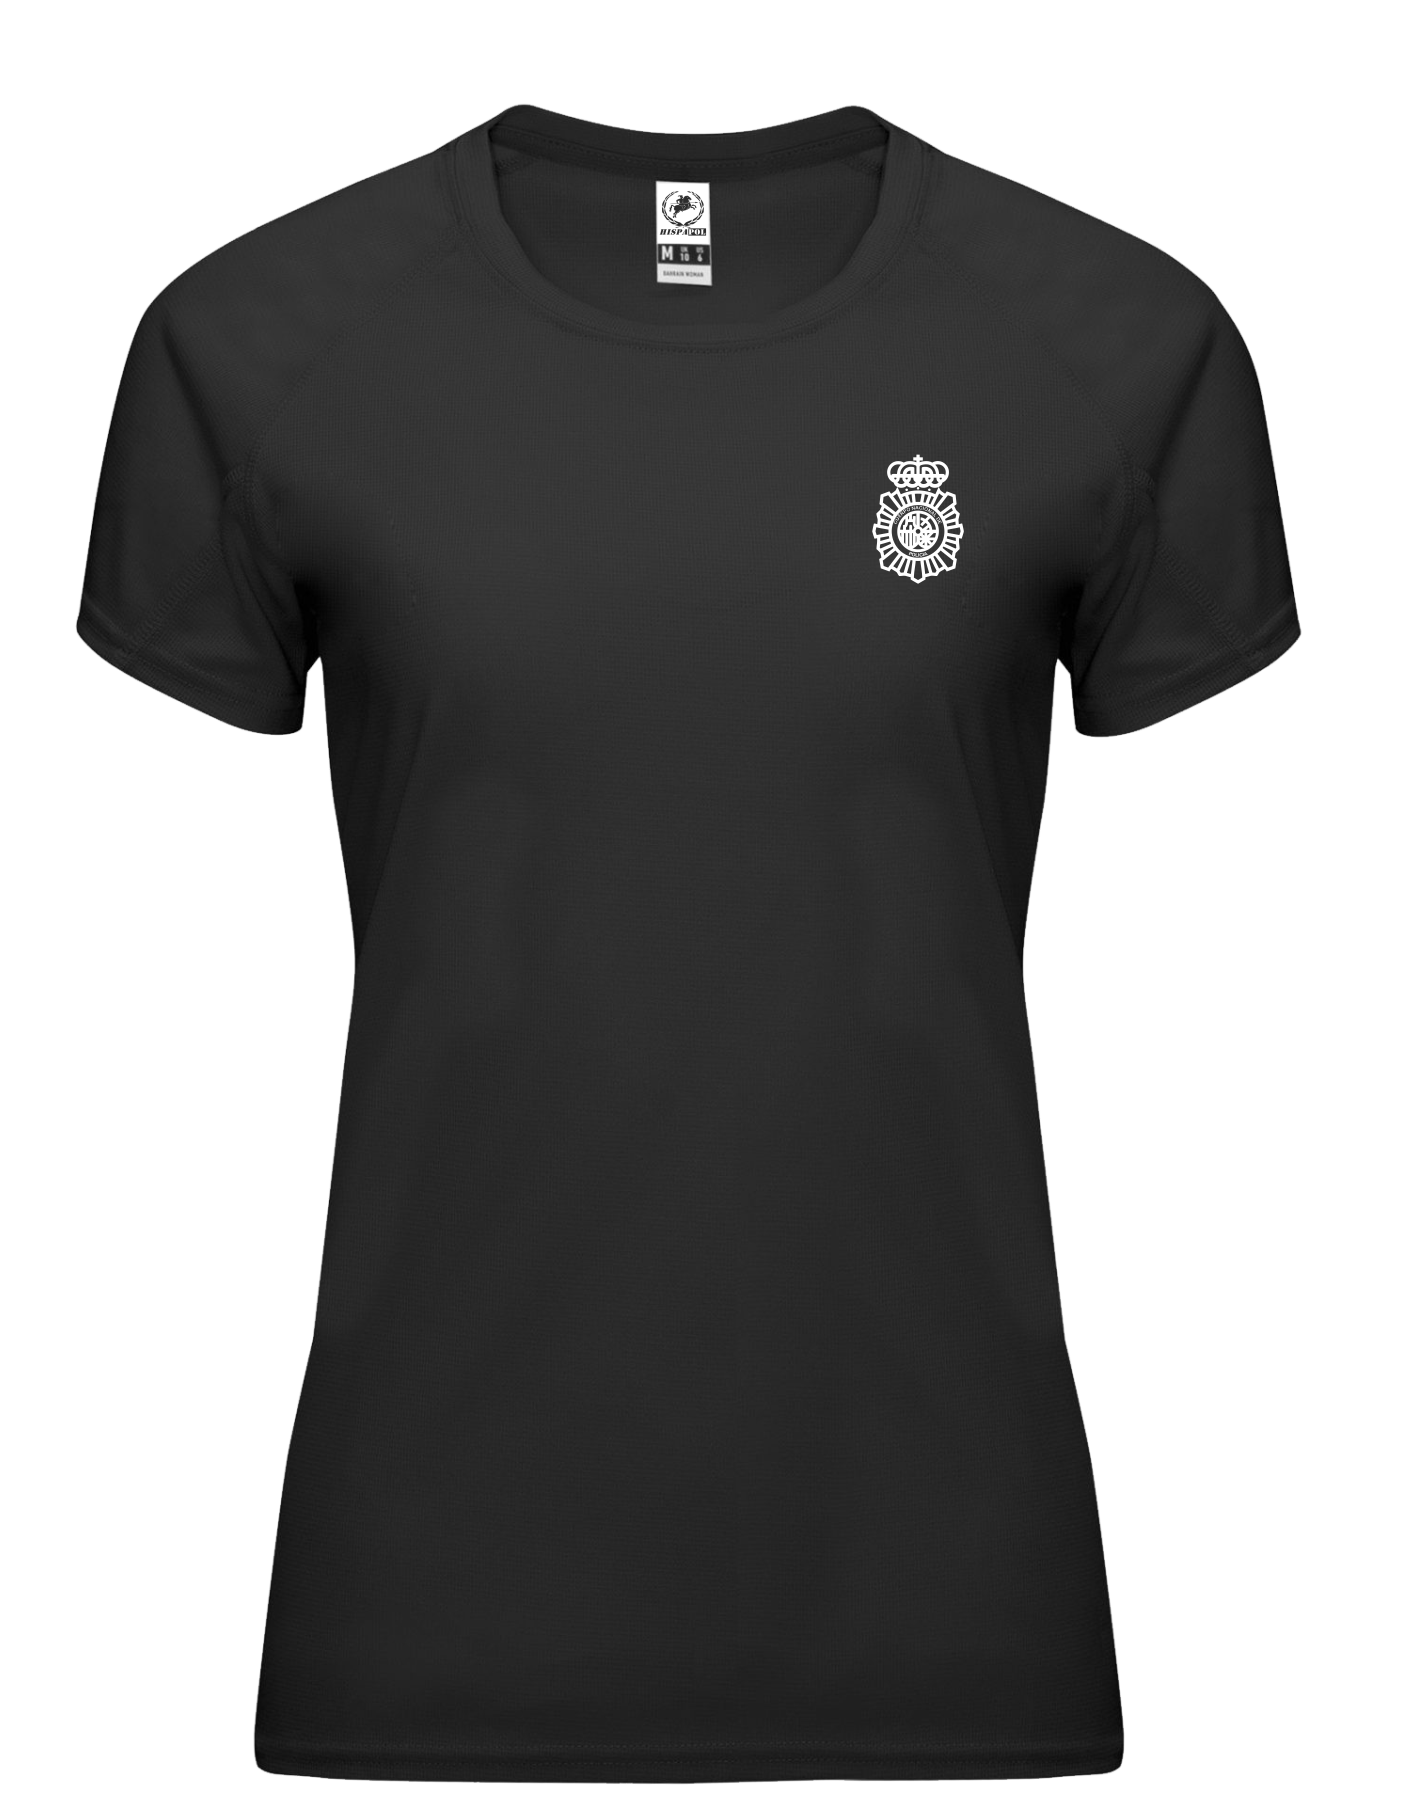 Camiseta Policía Nacional Moderna – ASPIRANTEAPOLICIA